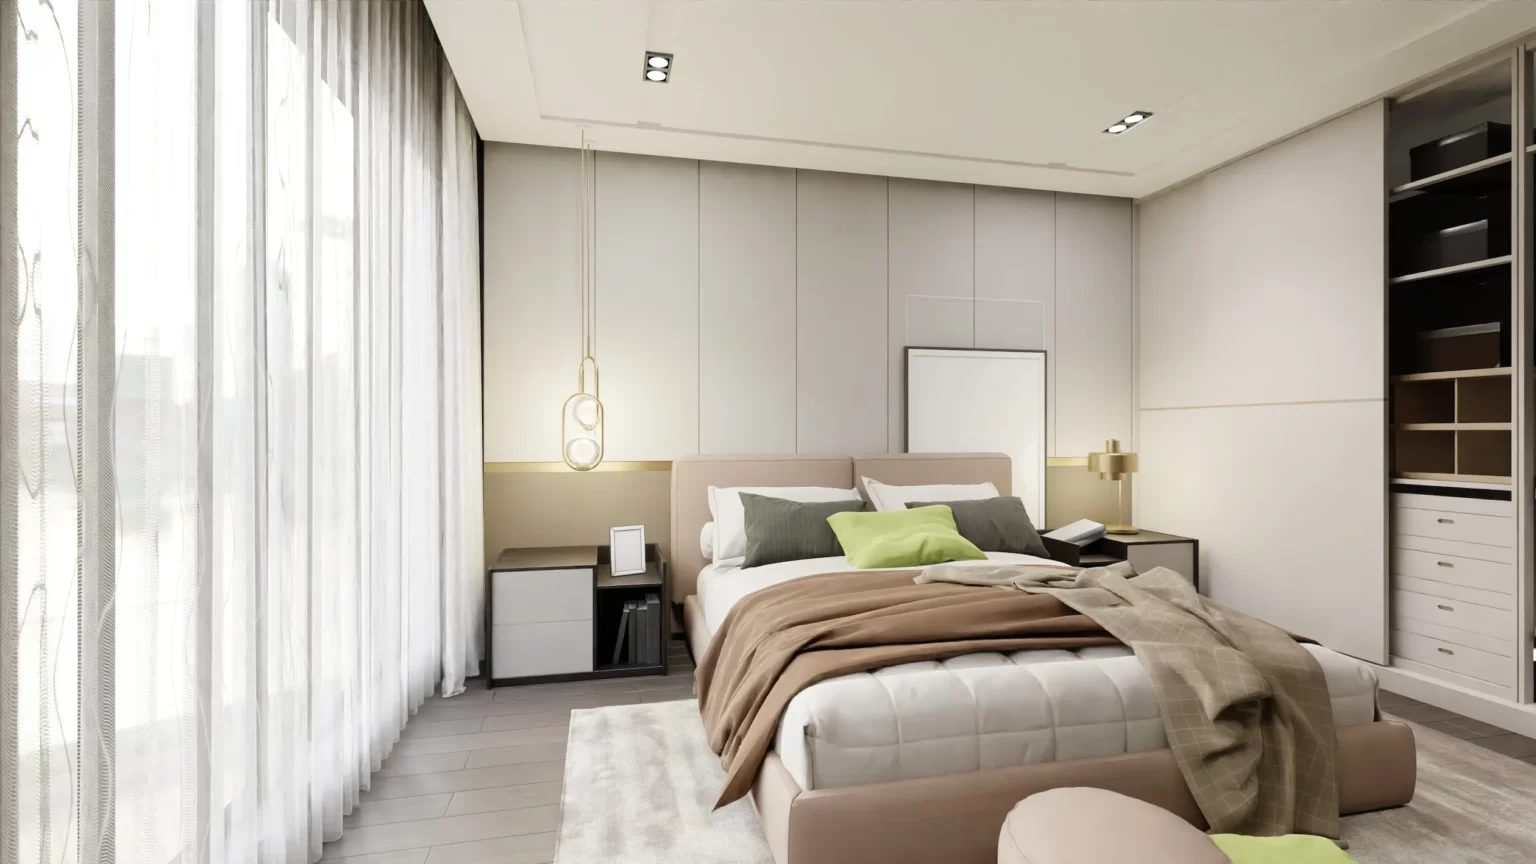 Deckenleuchte vs. Stehlampe: Welche Beleuchtung passt besser ins Schlafzimmer?